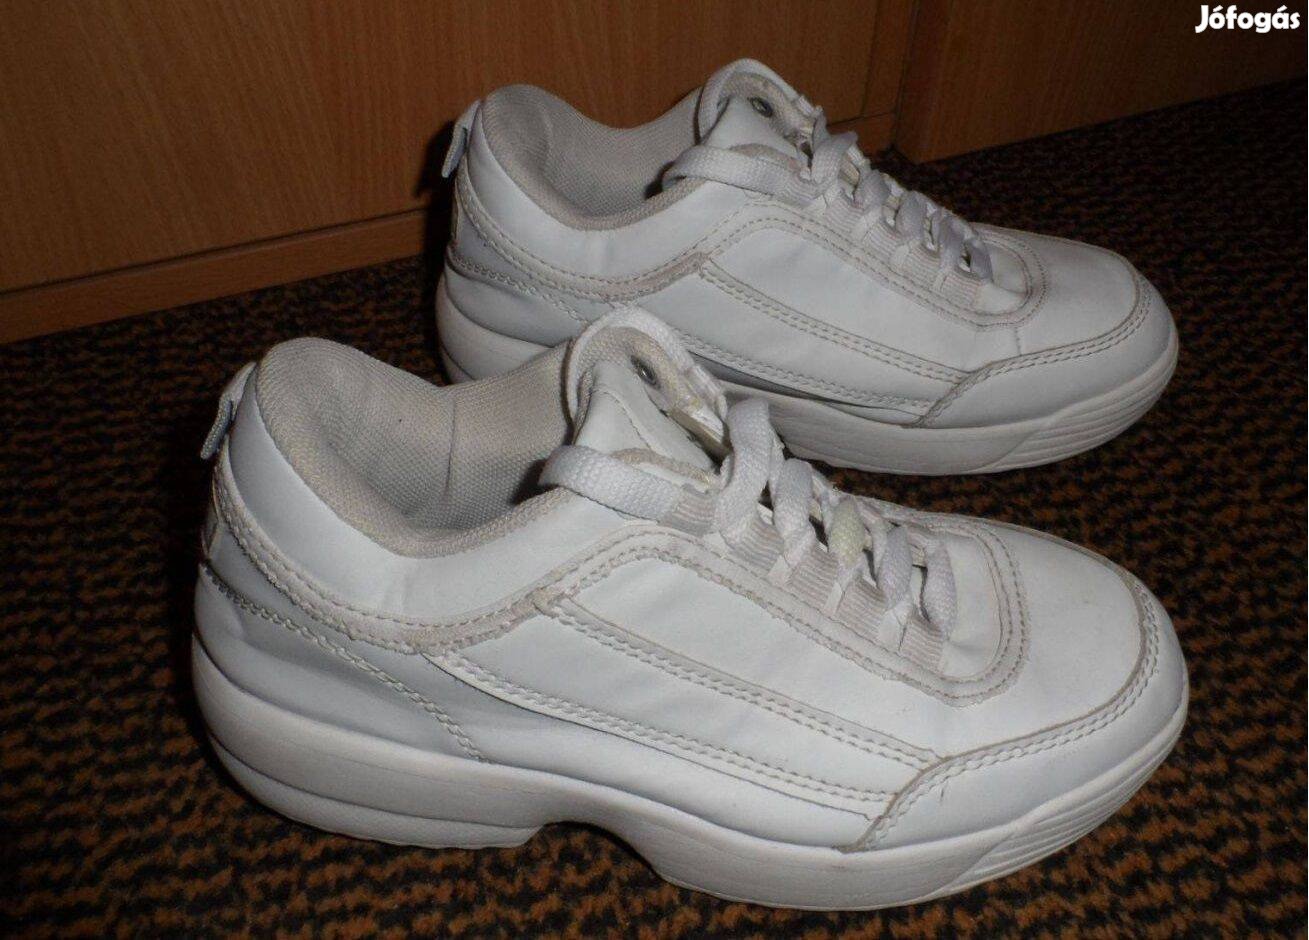 32-es/33-as fehér sneakers cipő eladó